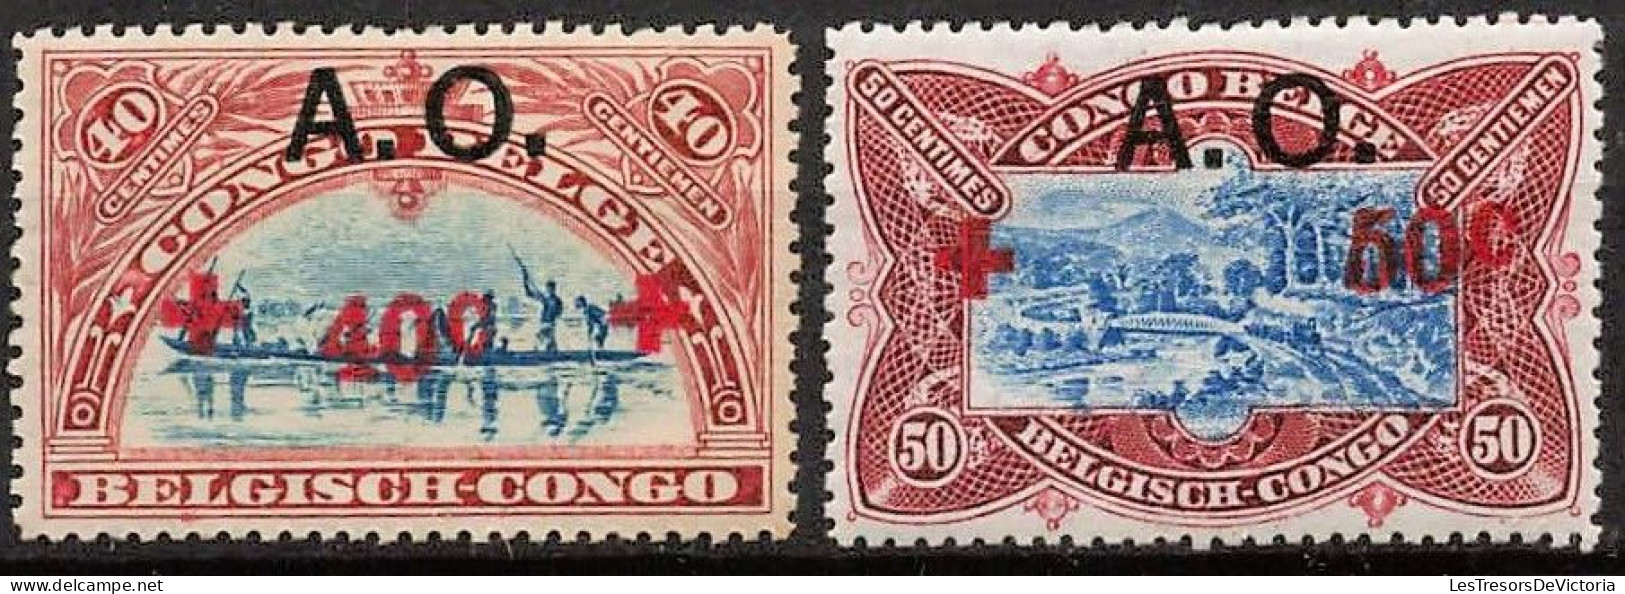 Timbres - Ruanda Urundi - 1918 - COB 36/44*  Croix Rouge - Cote 150 - Neufs